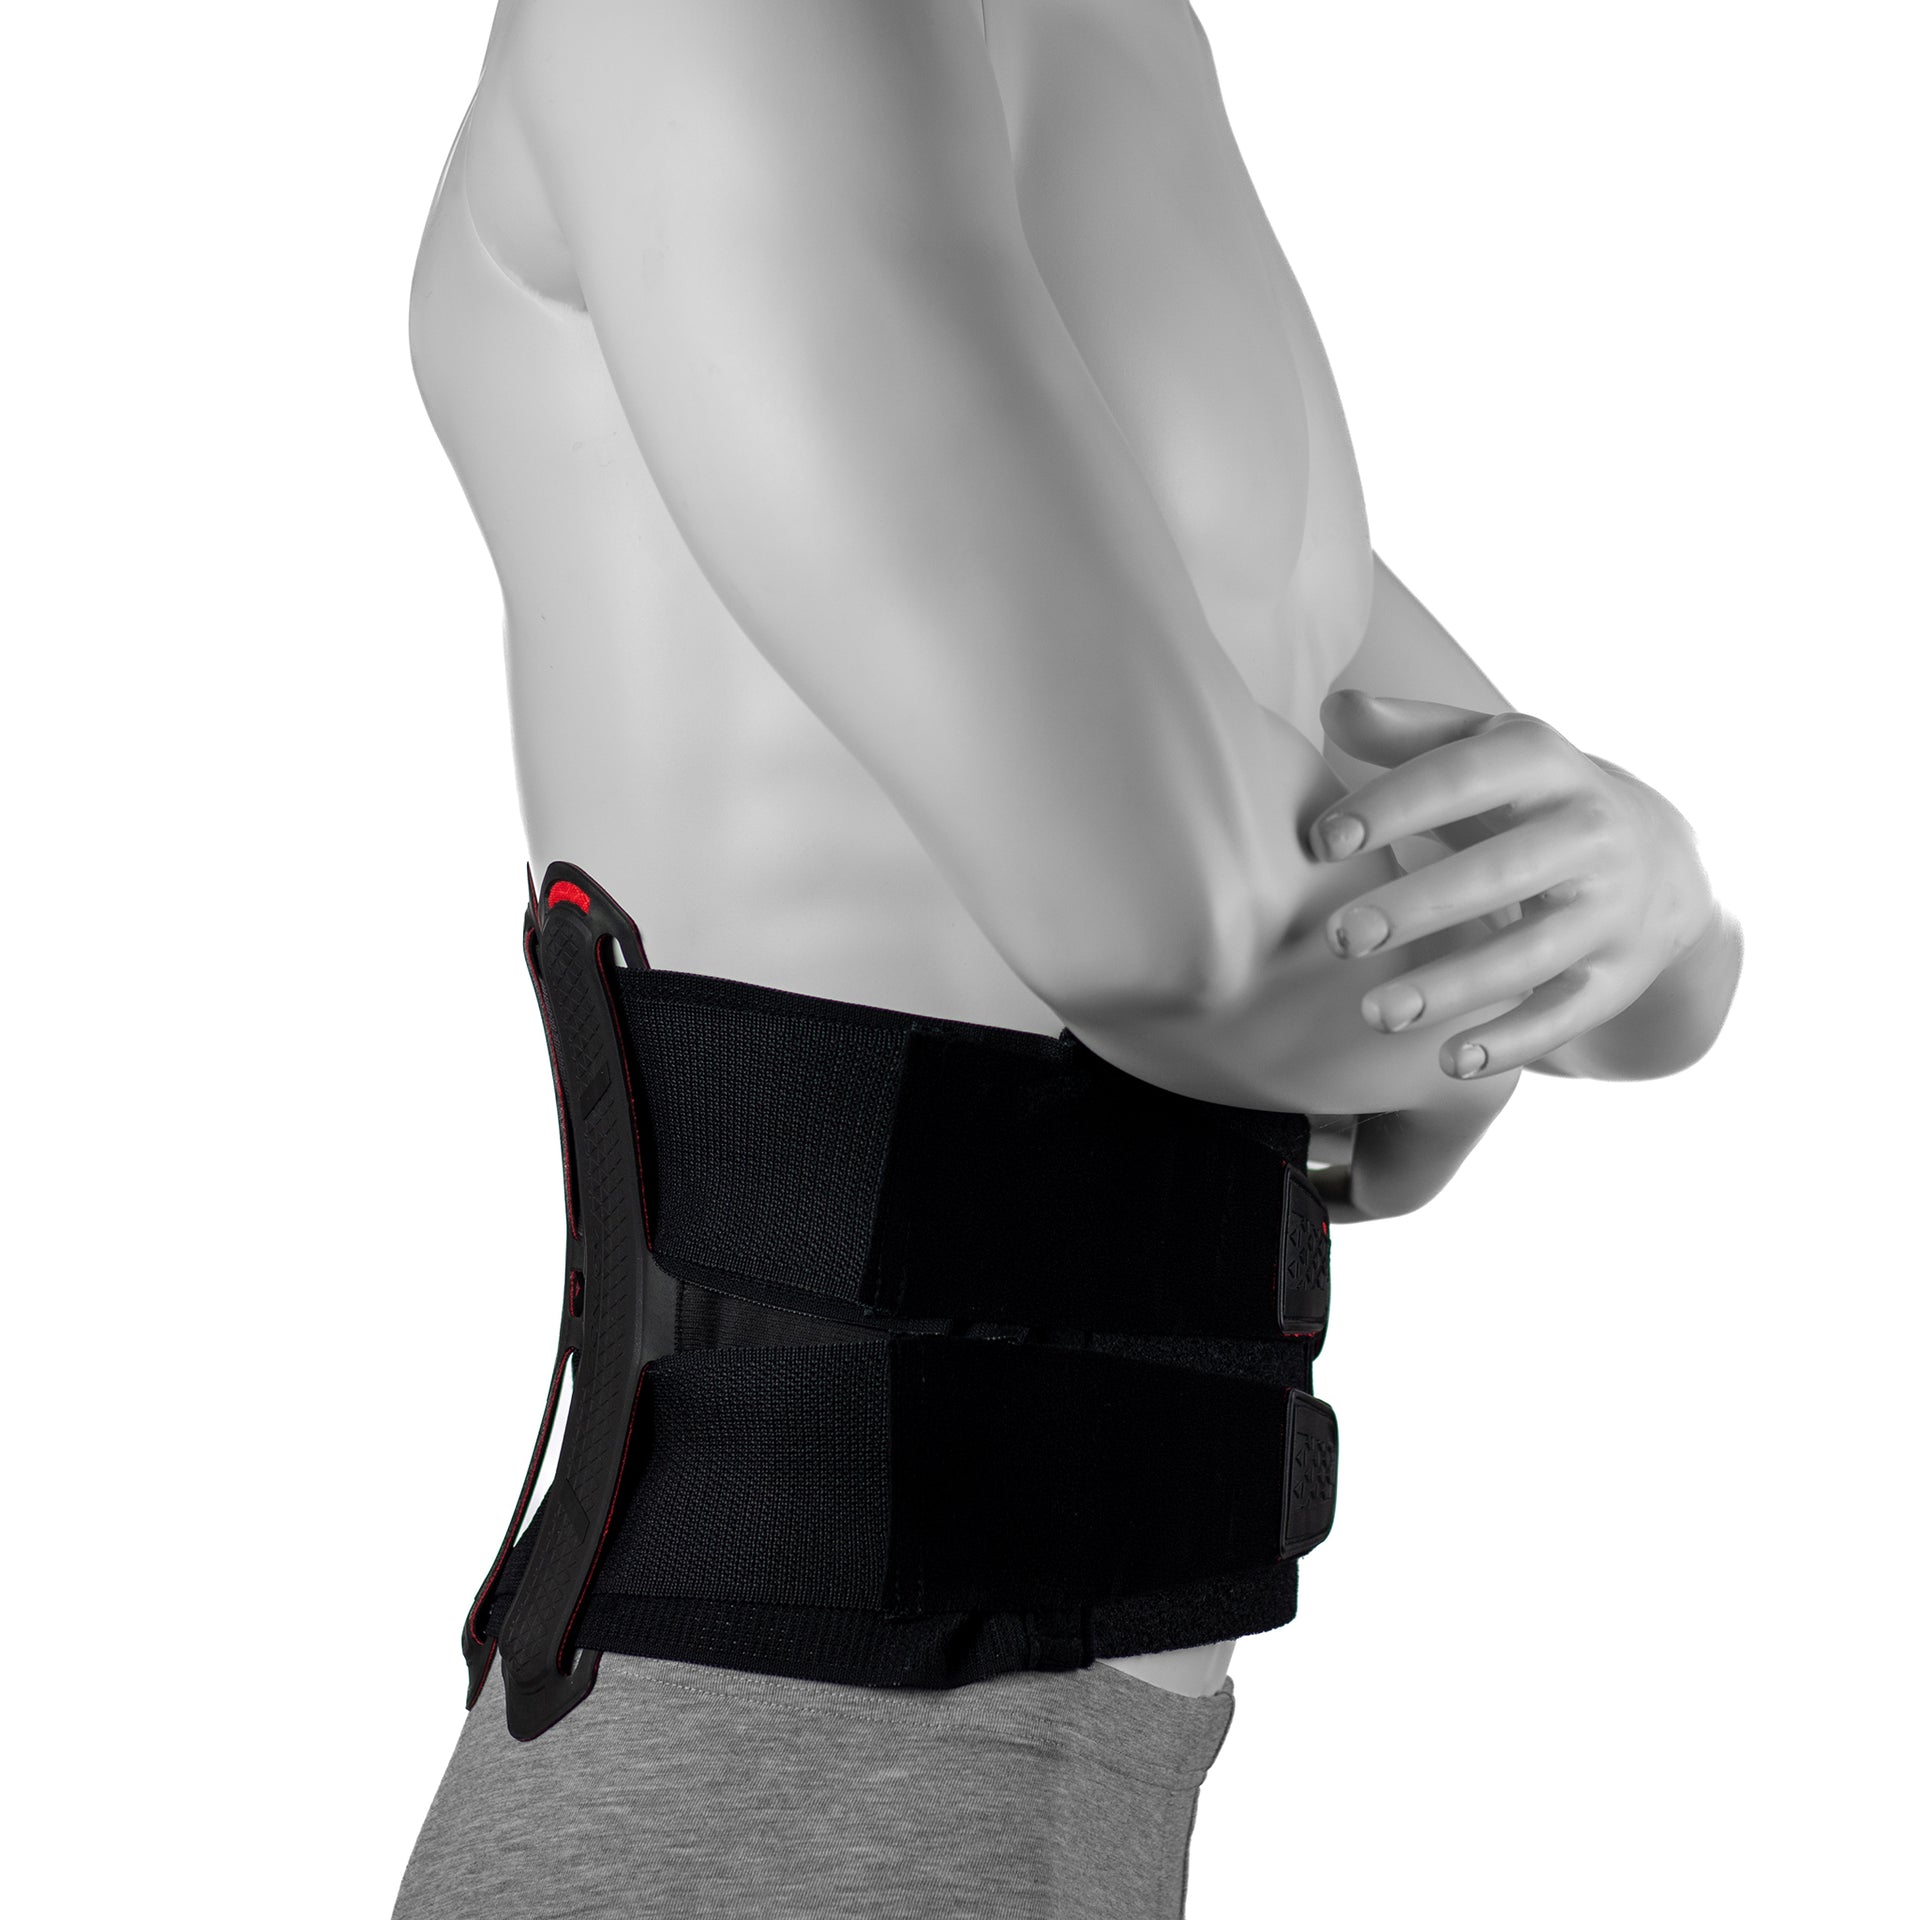 Ceinture de soutien du dos pour soulager les douleurs dorsales